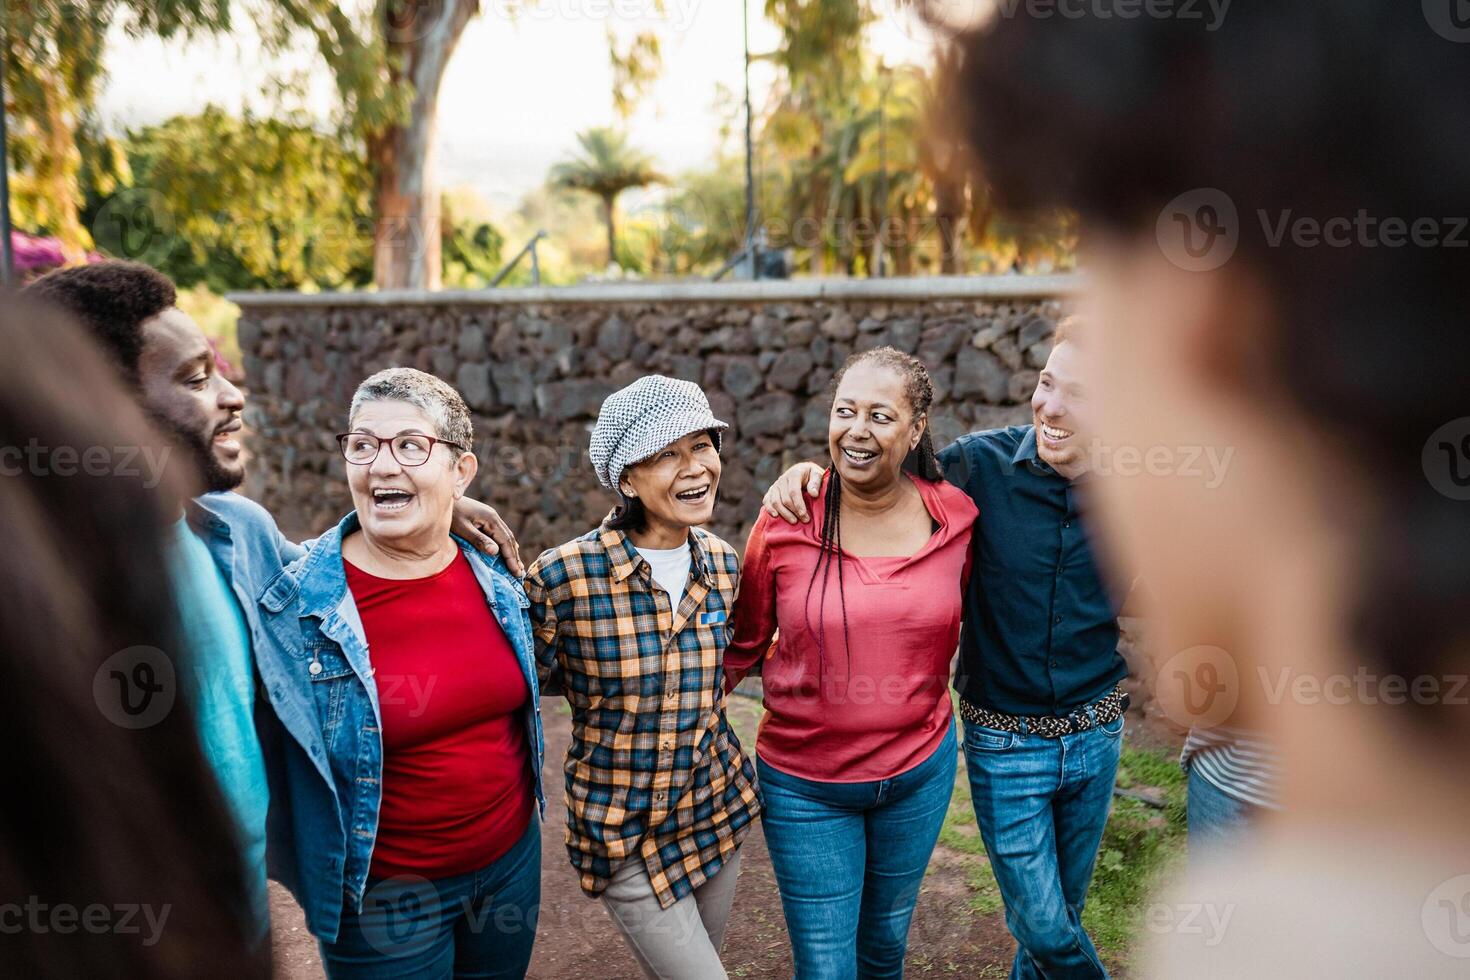 contento multigeneracional grupo de personas con diferente etnias teniendo divertido en un público parque - personas diversidad concepto foto